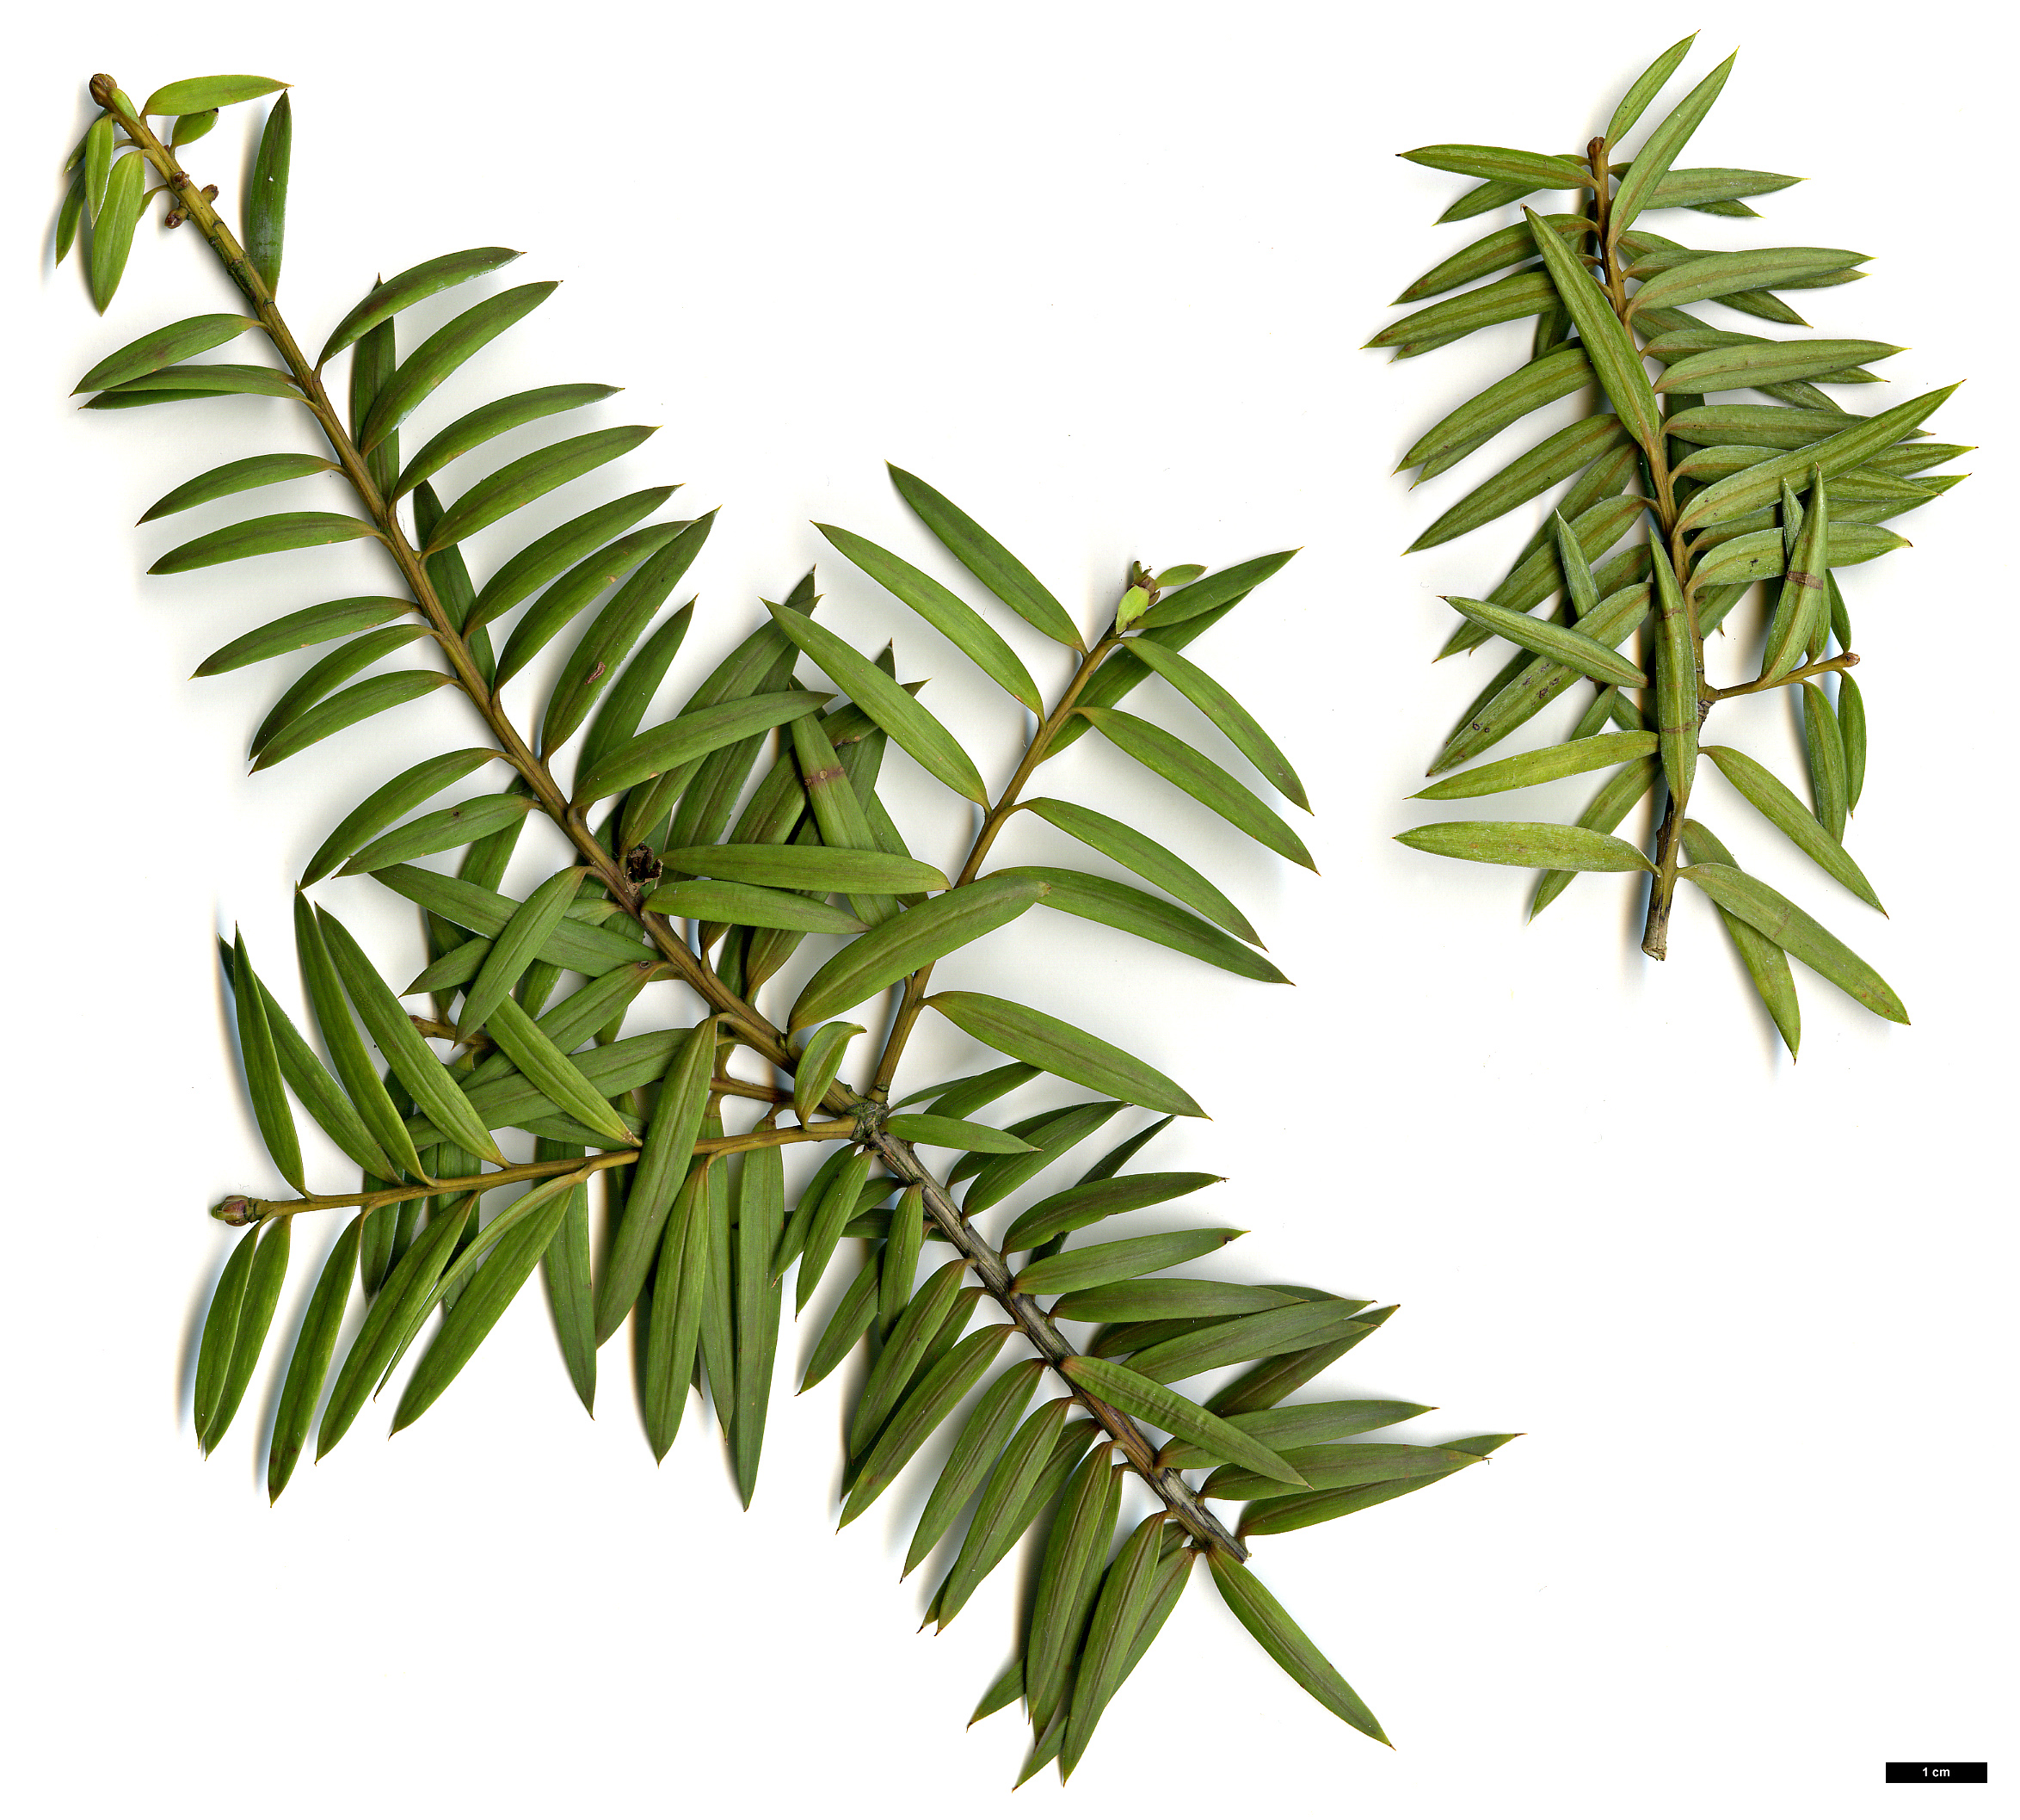 High resolution image: Family: Podocarpaceae - Genus: Podocarpus - Taxon: totara